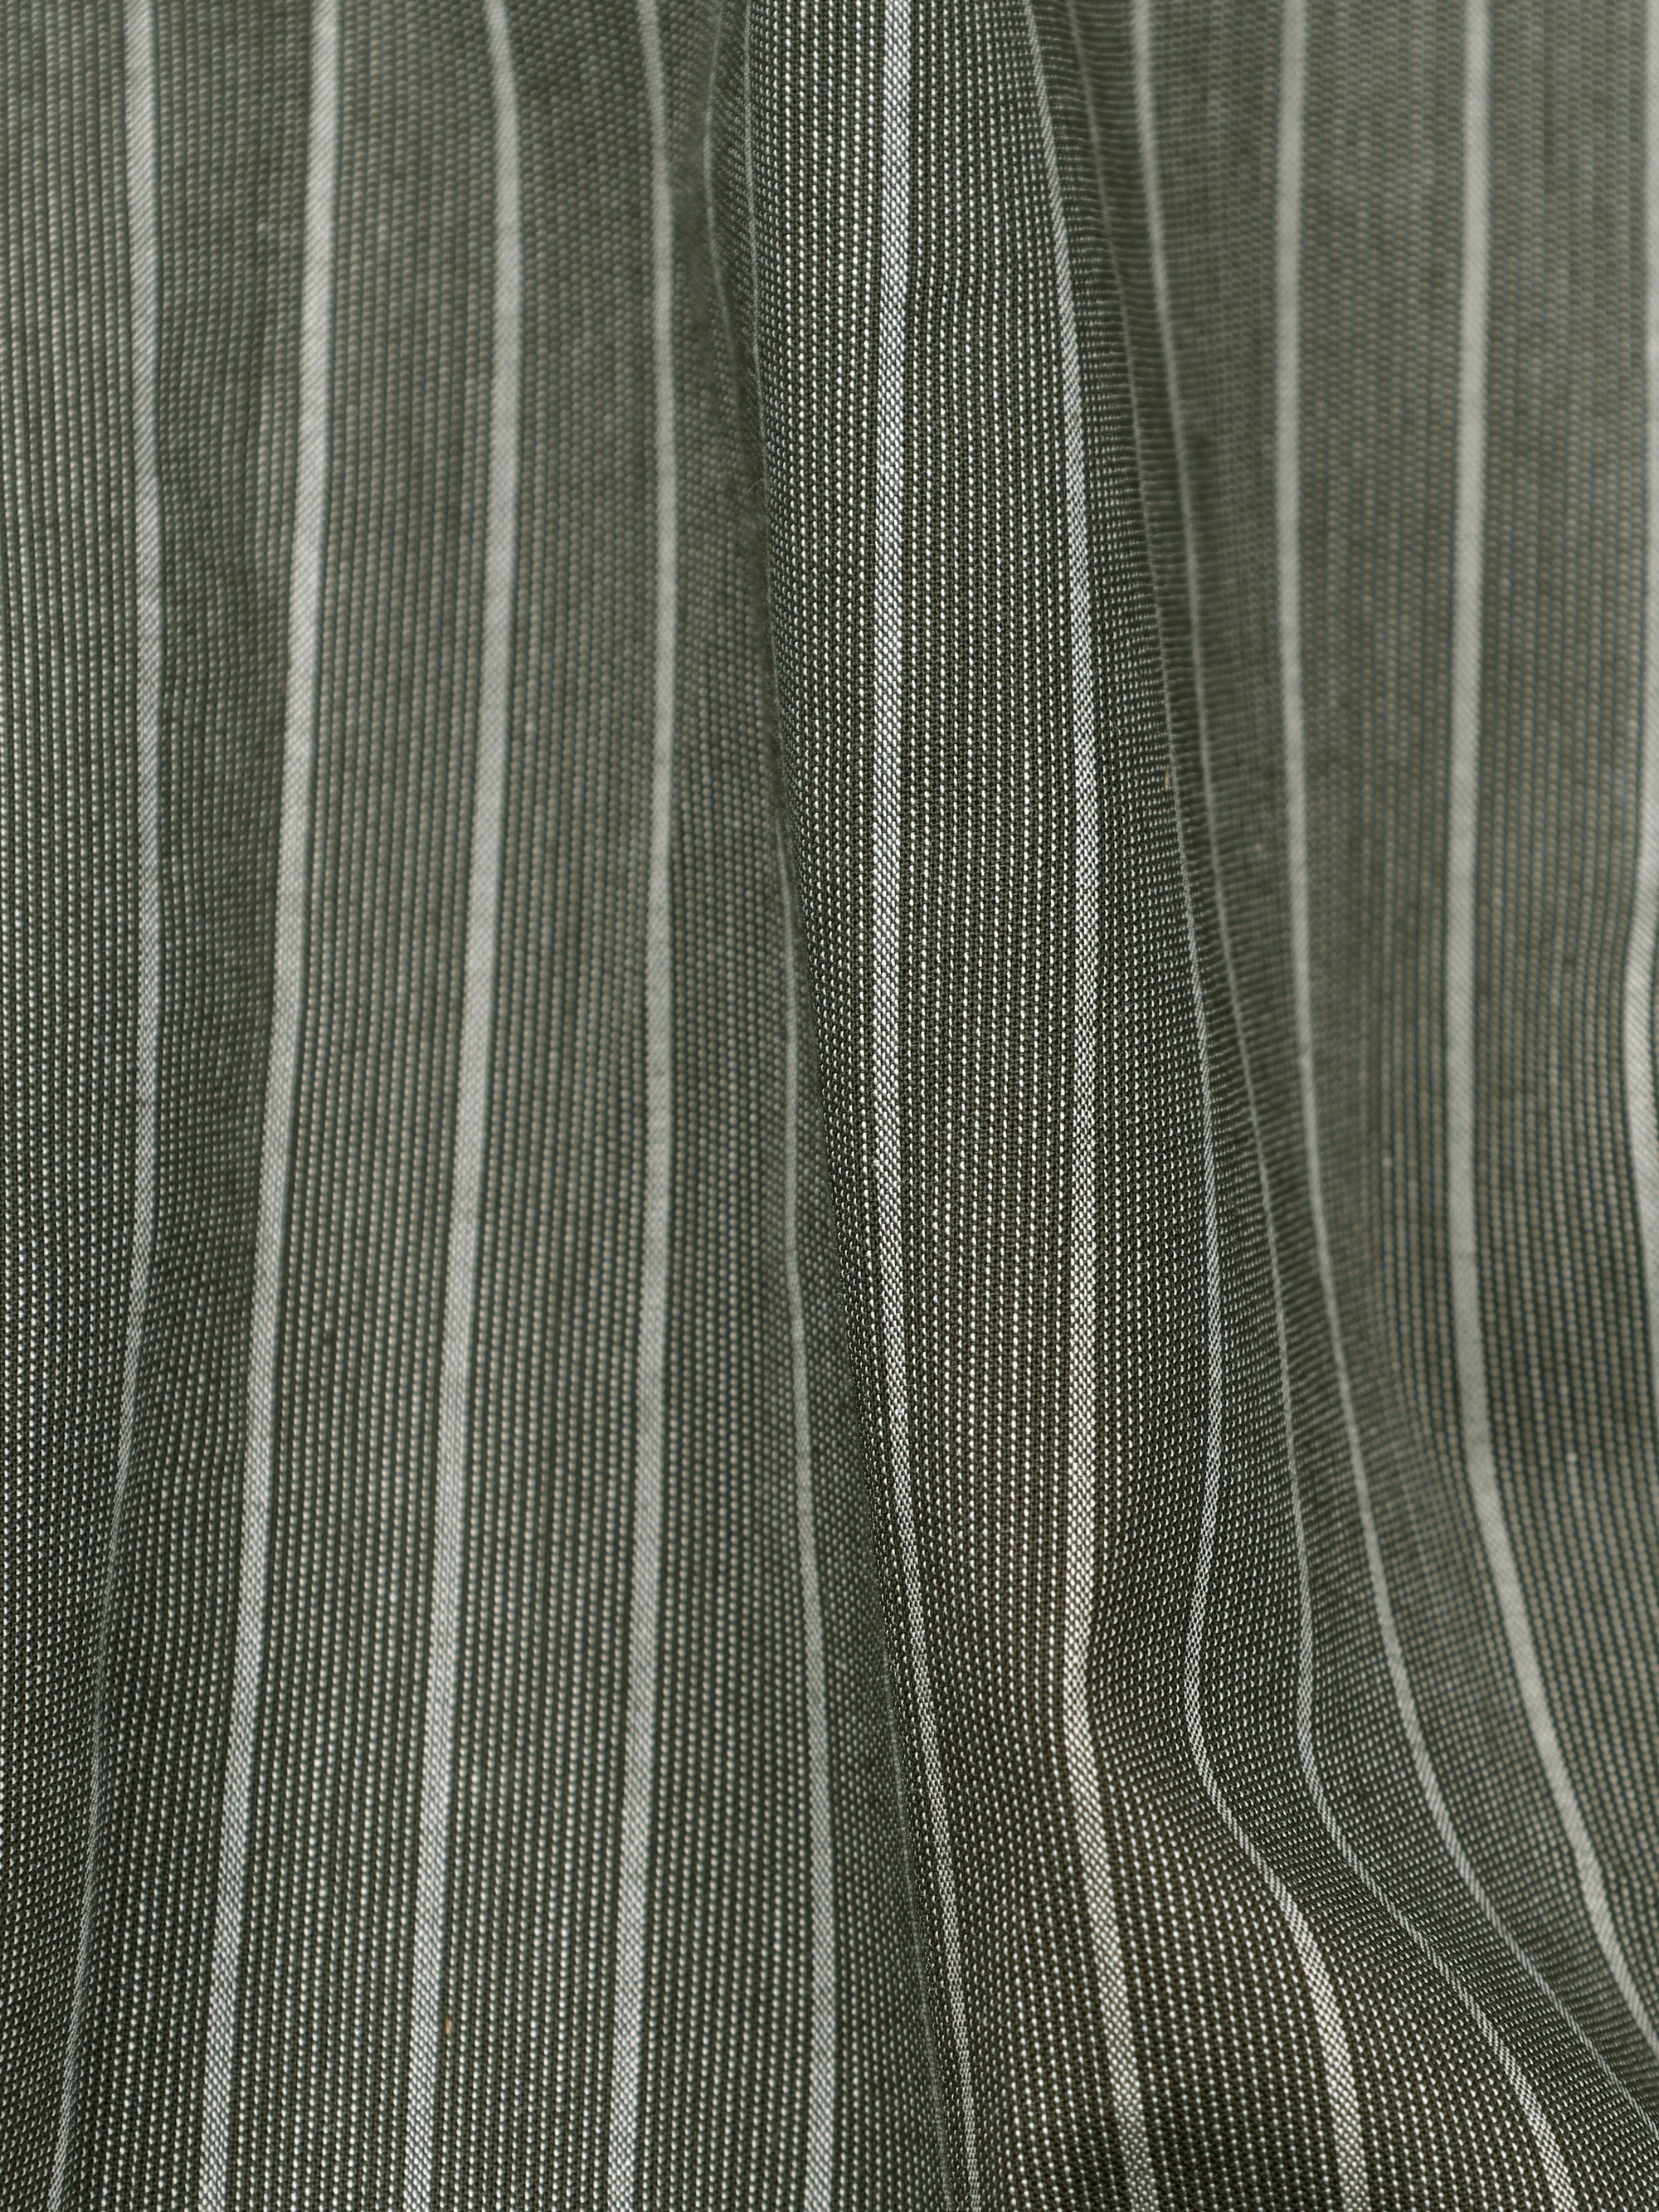 Green Smoke With White Striped Textured Premium Cotton Shirt